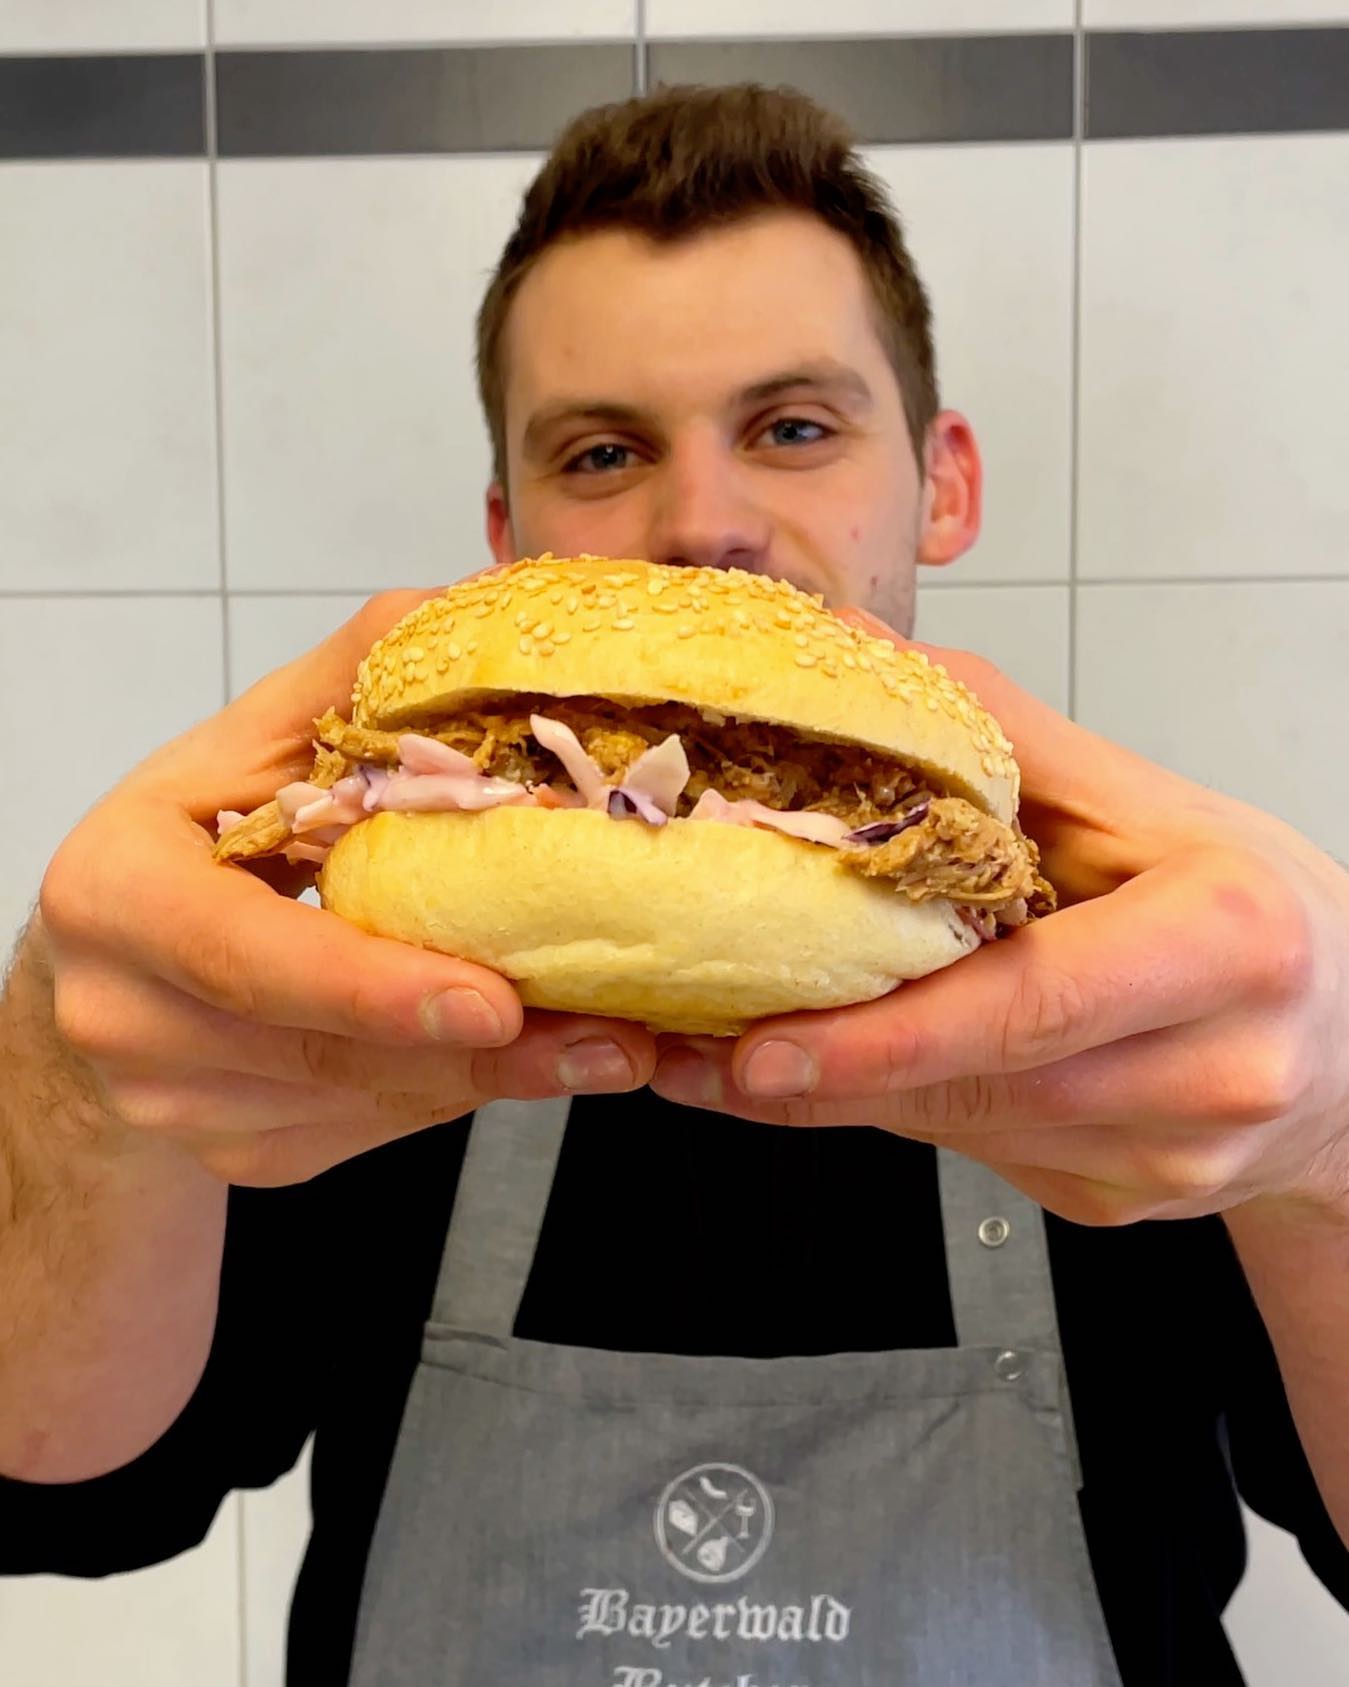 Am Mittwoch, den 23.03 gibt‘s wieder leckere Pulled Pork Burger 🍔
Bei @metzgereizankl in Saulburg und in Wörth!

Nur solange der Vorrat reicht! 🔥
Um Vorbestellung wird gebeten.

#pulledpork #burger #grill #grillen #bbq #butchersofinstagram #bayerwaldbutcher